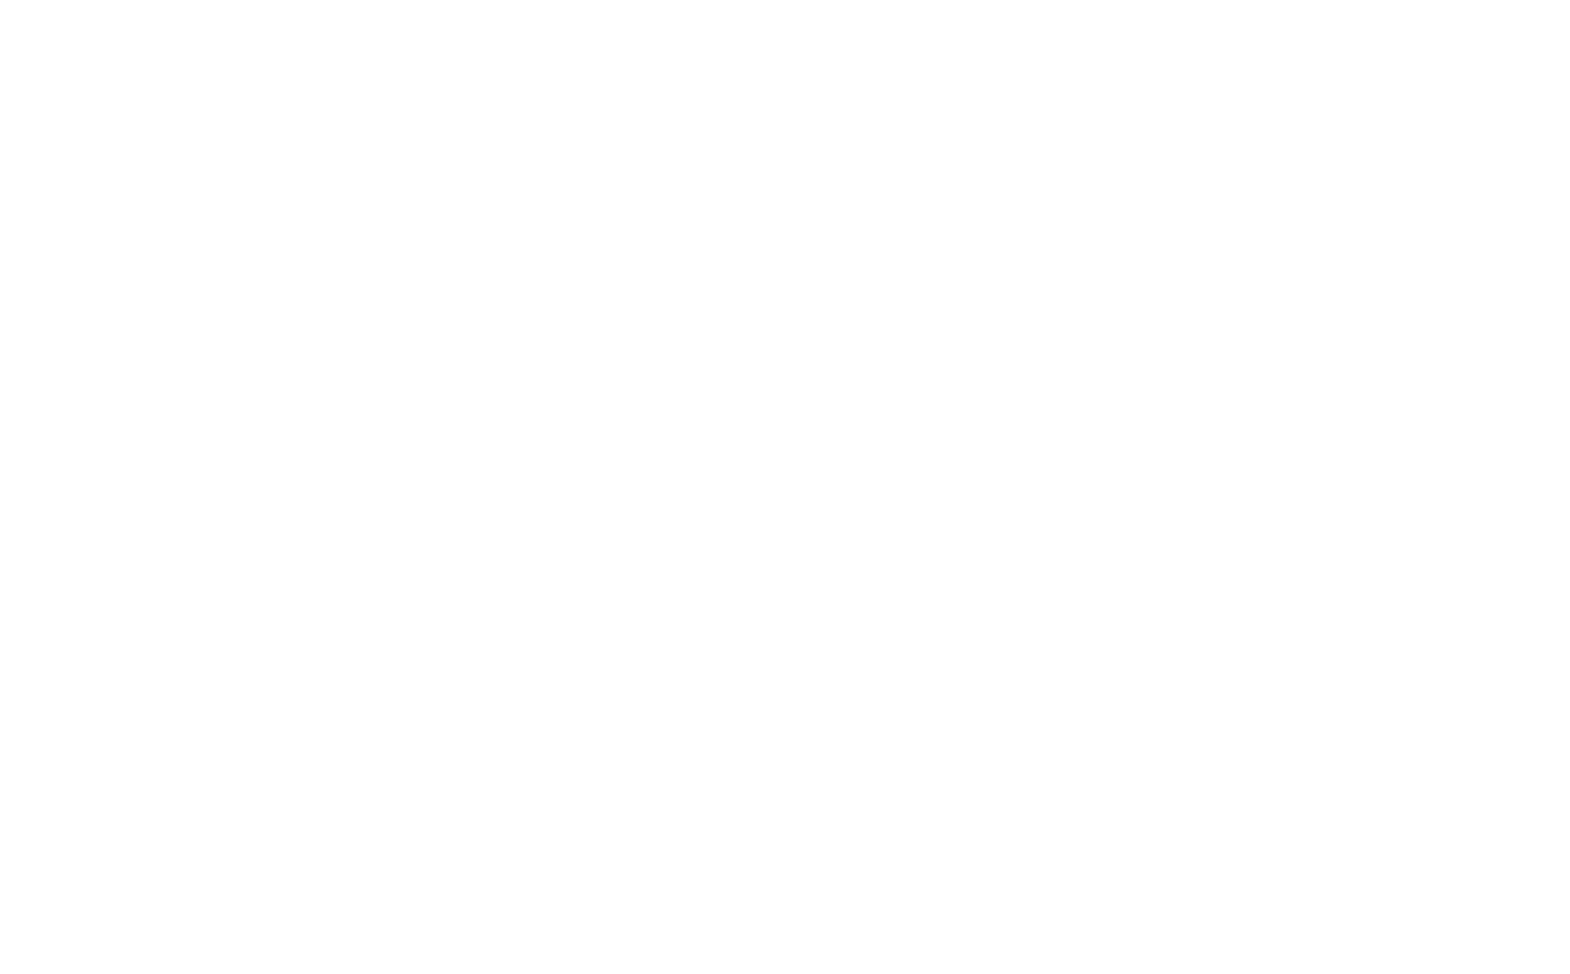 Zscaler logo for dark backgrounds (transparent PNG)